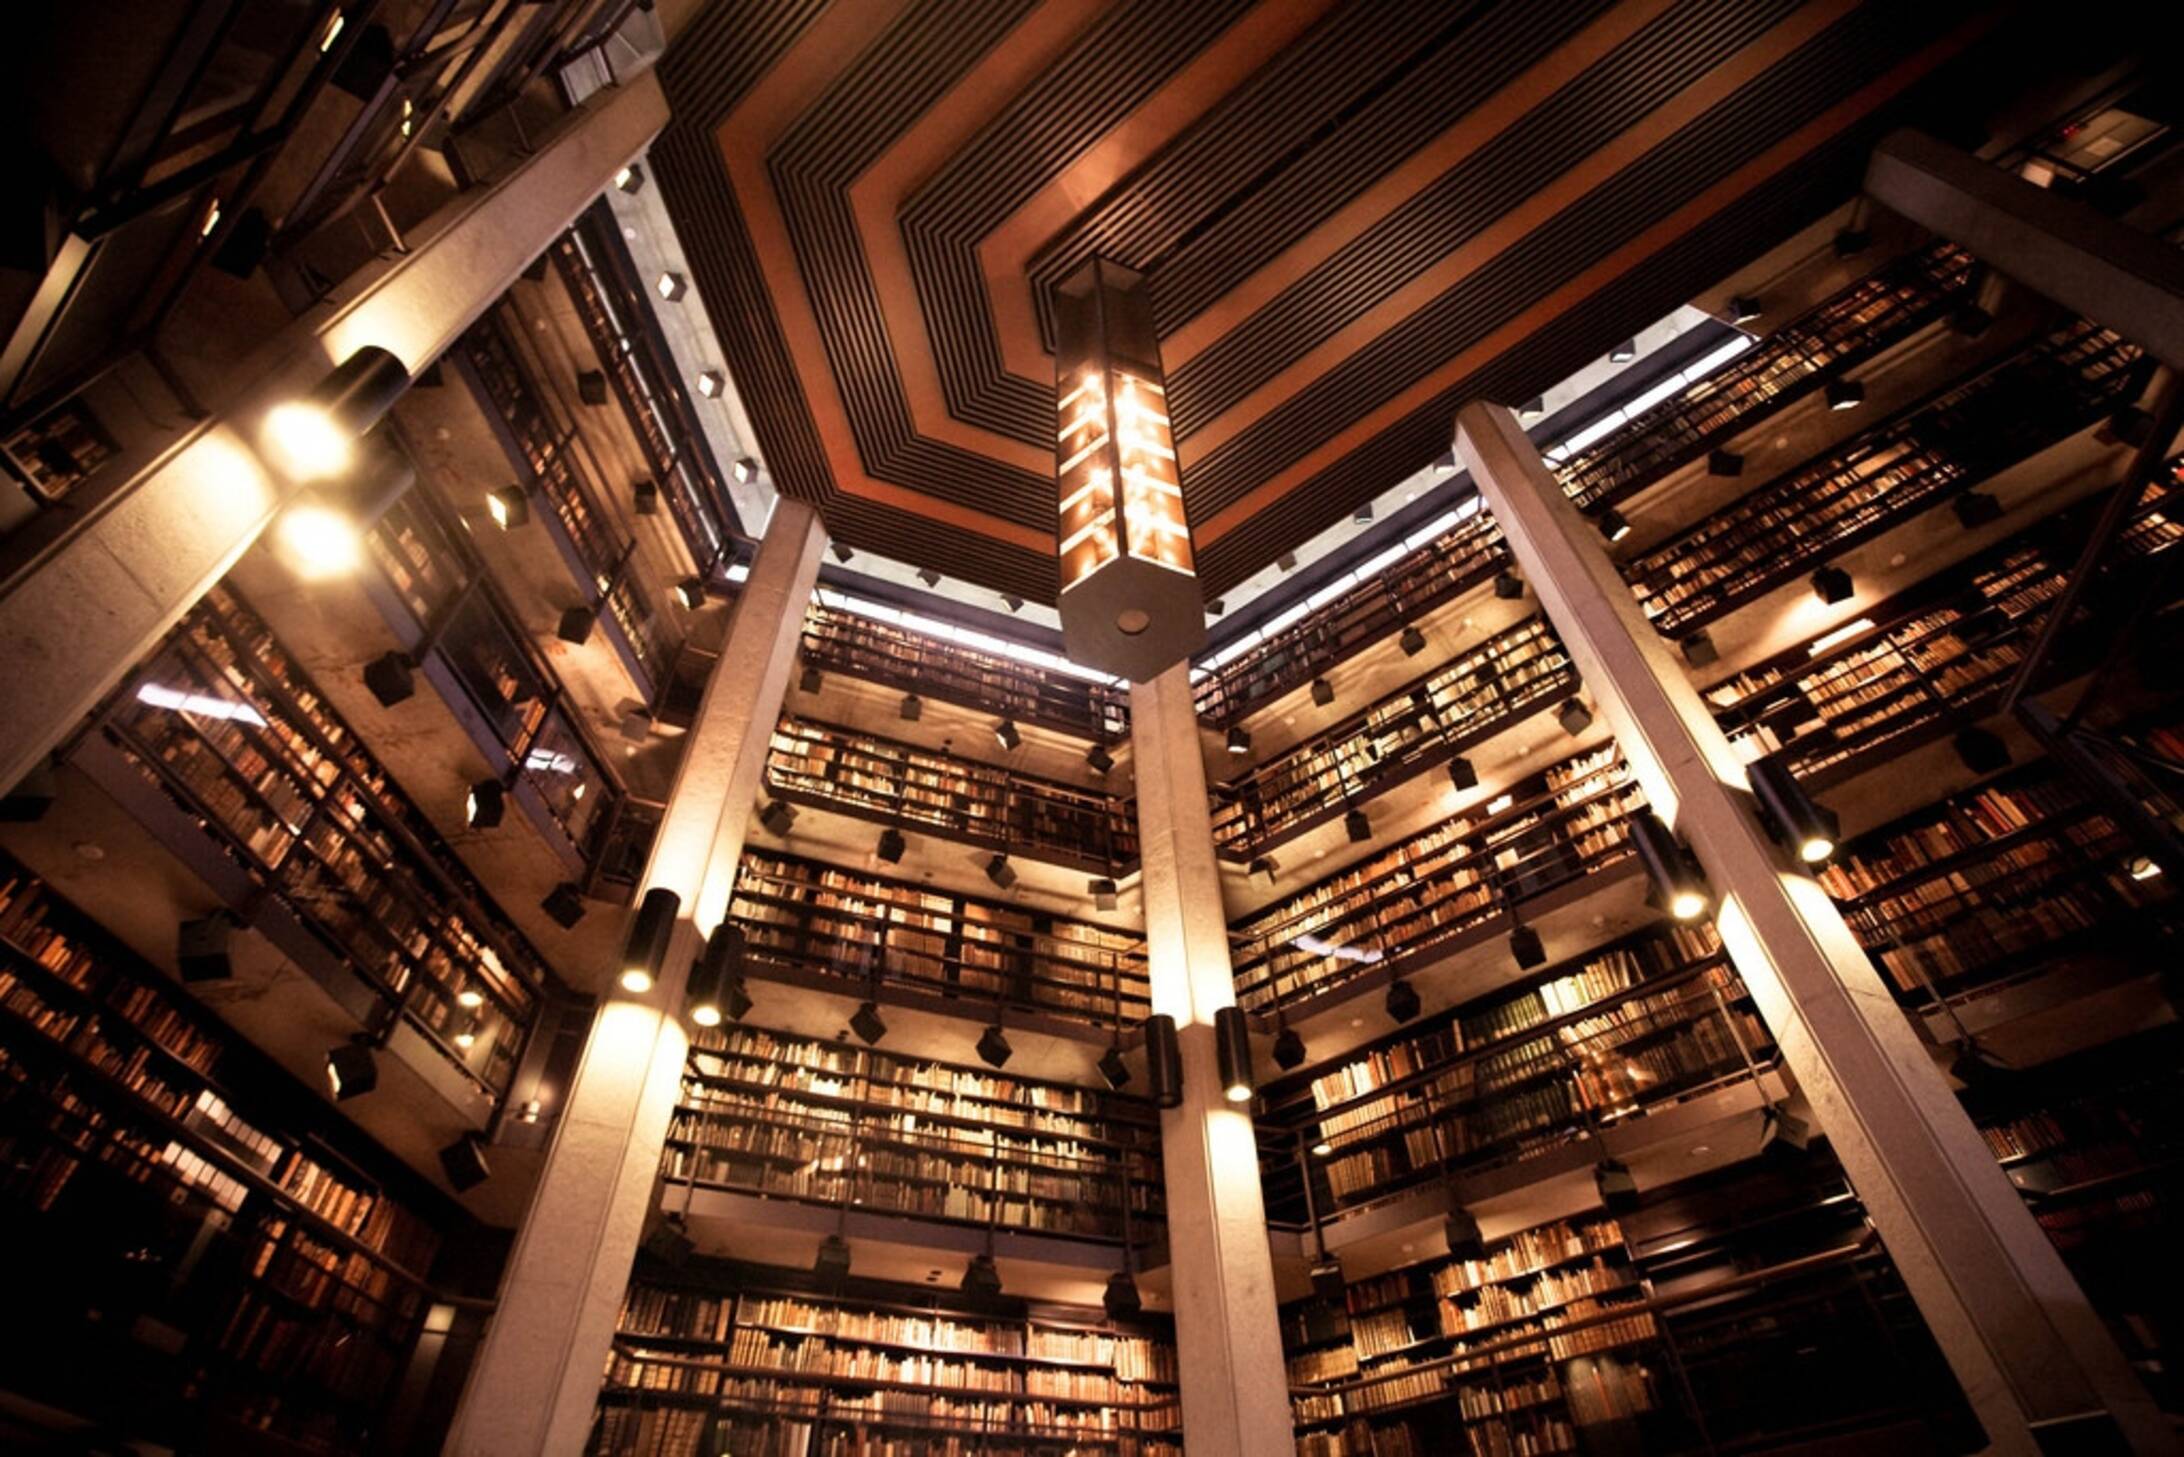 Библиотека социальных практик. Брайан Кравиц библиотека. Библиотека университета Торонто. Йельский университет библиотека. Библиотека Фишера (Fisher Library) в сиднейском университете.